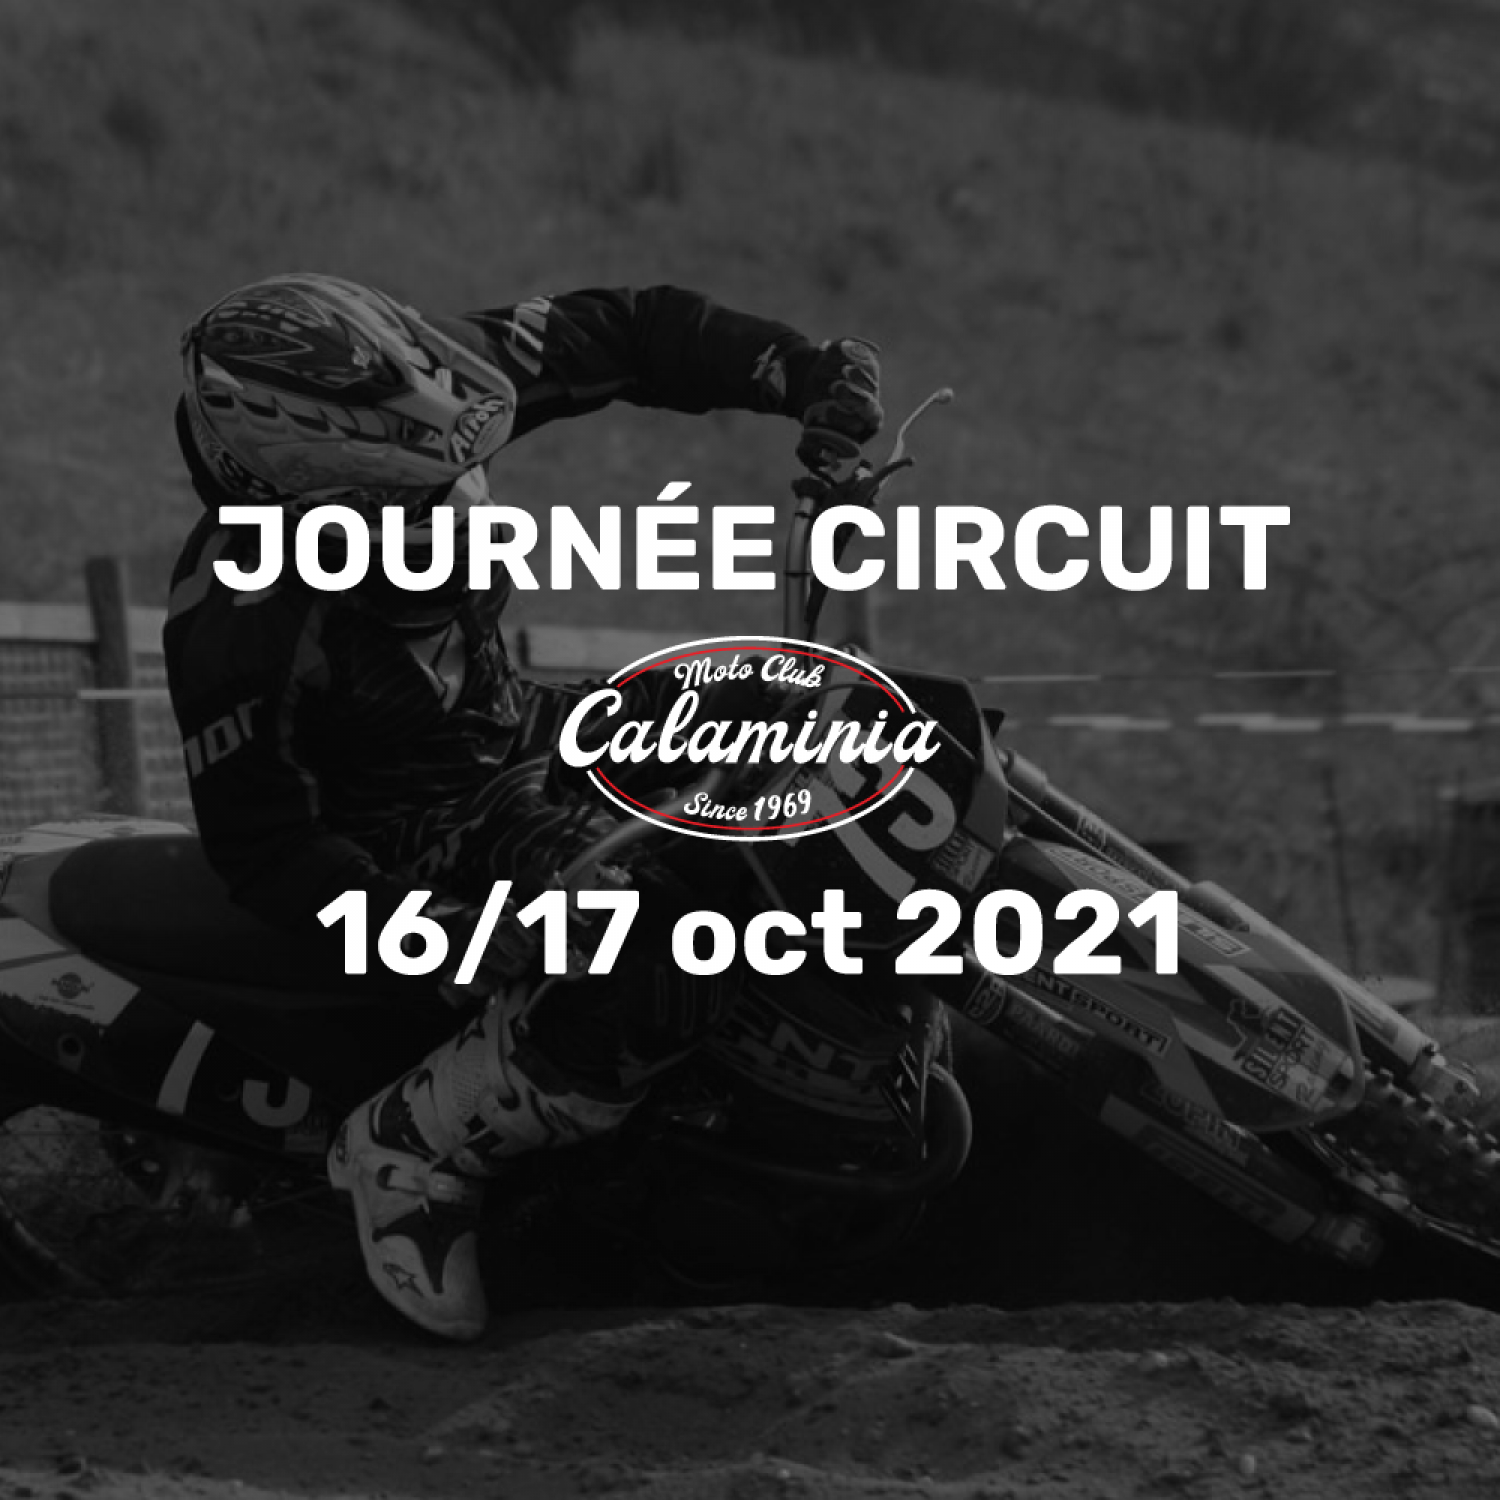 Le CMC organise un week-end sur le circuit d'Eschweiler les 16 et 17 octobre 2021.